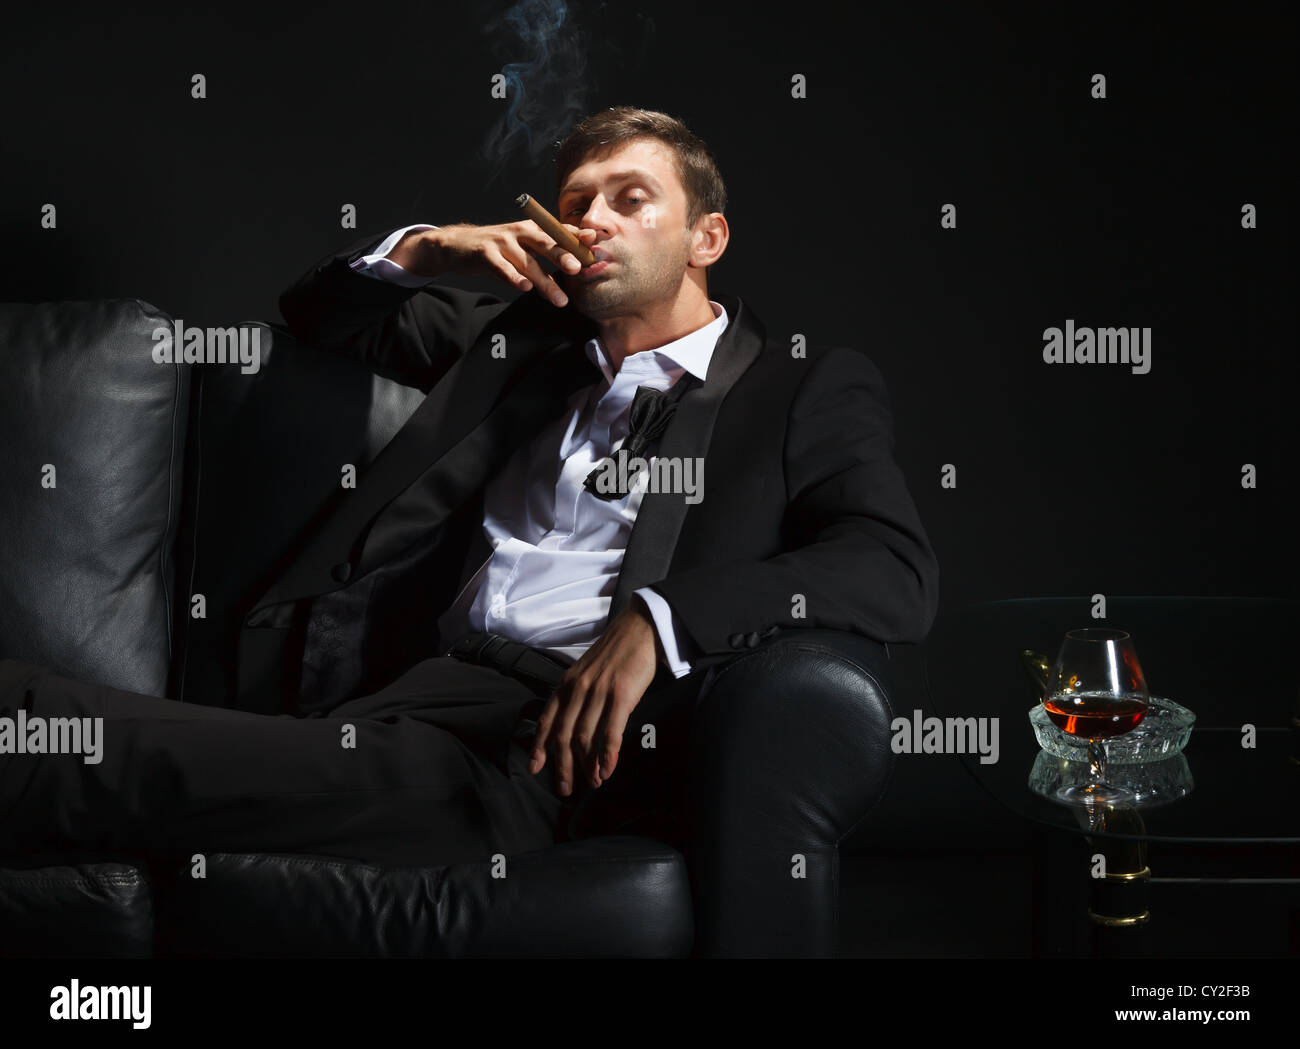 Hombre macho en un elegante esmoquin sentado en la oscuridad de una discoteca puffing sobre un cigarro y beber brandy o coñac Foto de stock